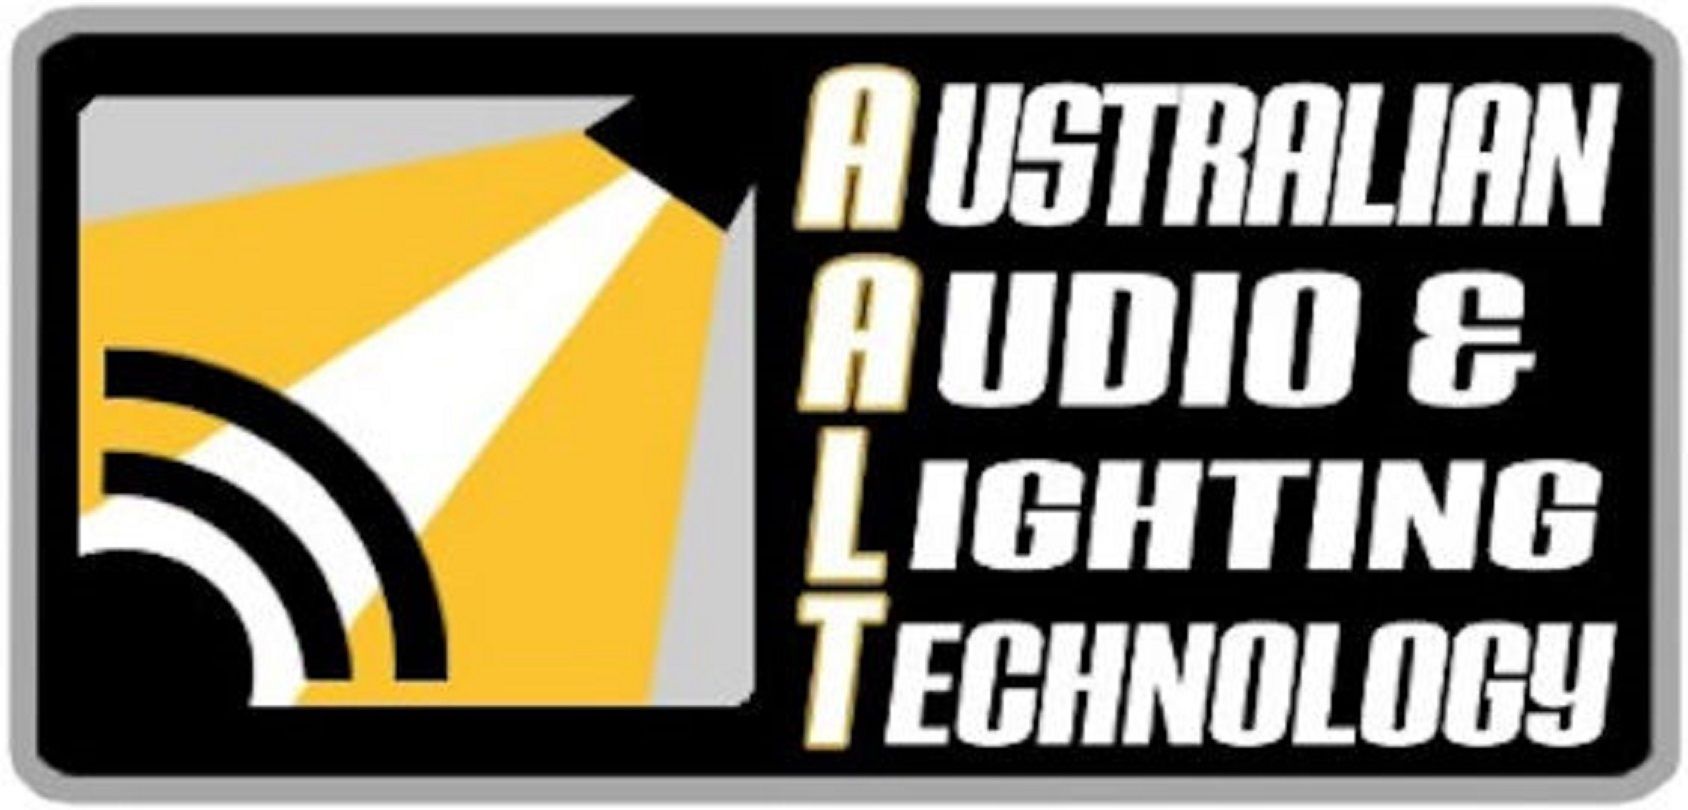 Australian Audio & Lighting Technology